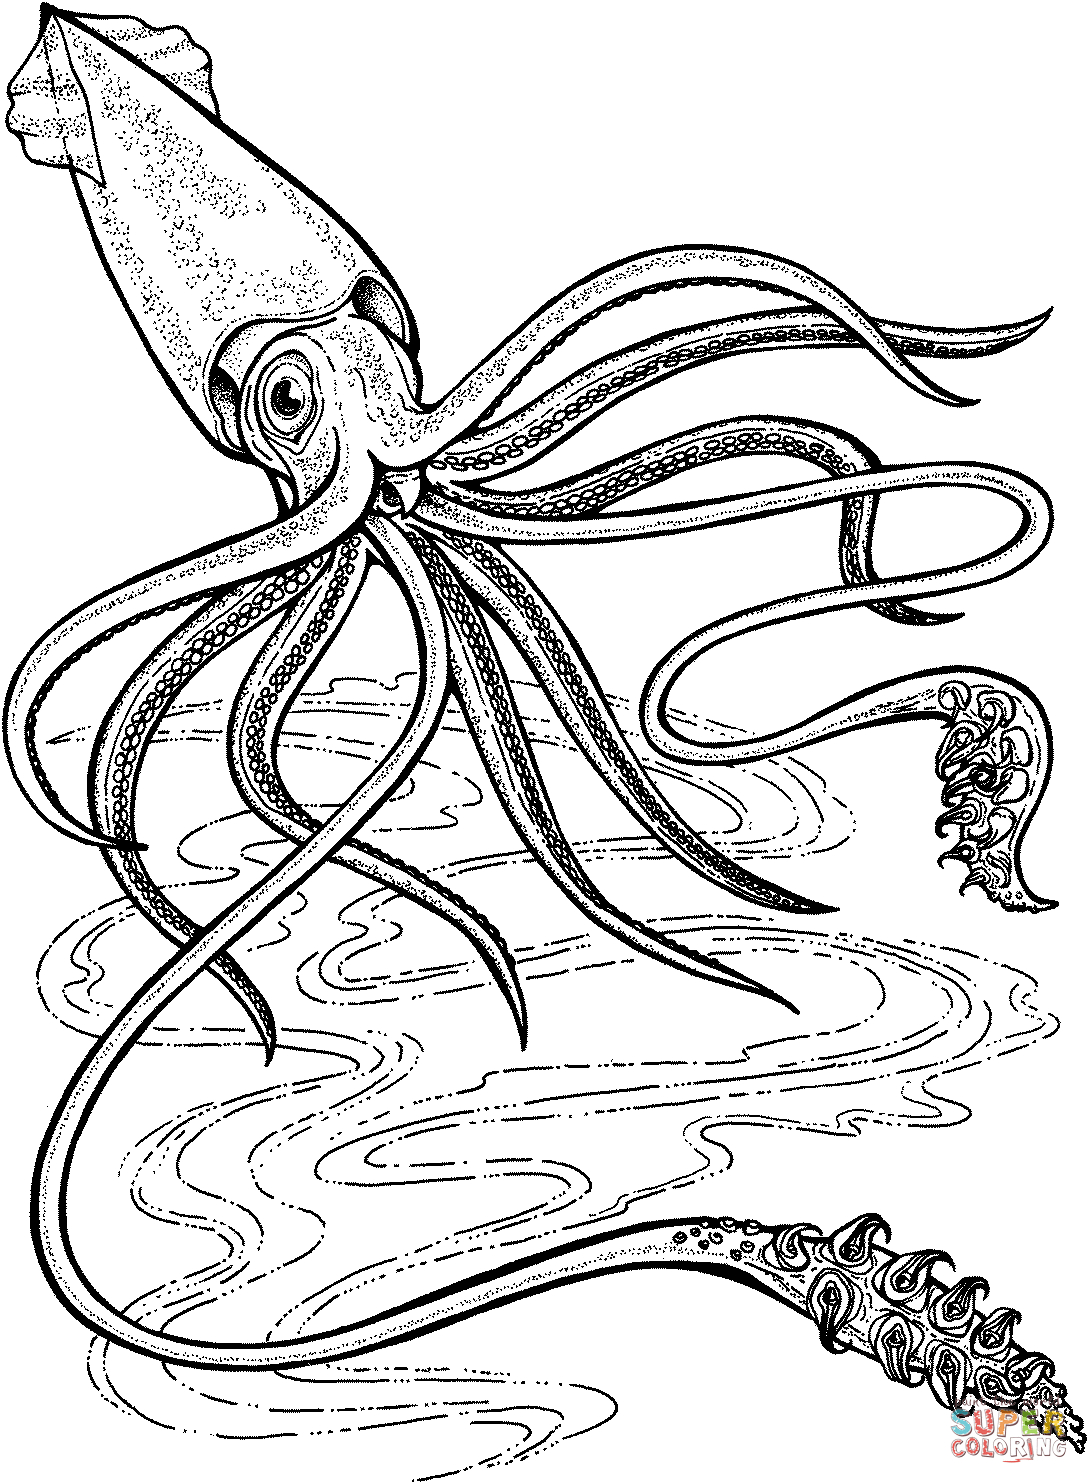 Squid Coloring Pages Printable Deep Ocean Giant Squid Coloring Page Free Printable Coloring Pages